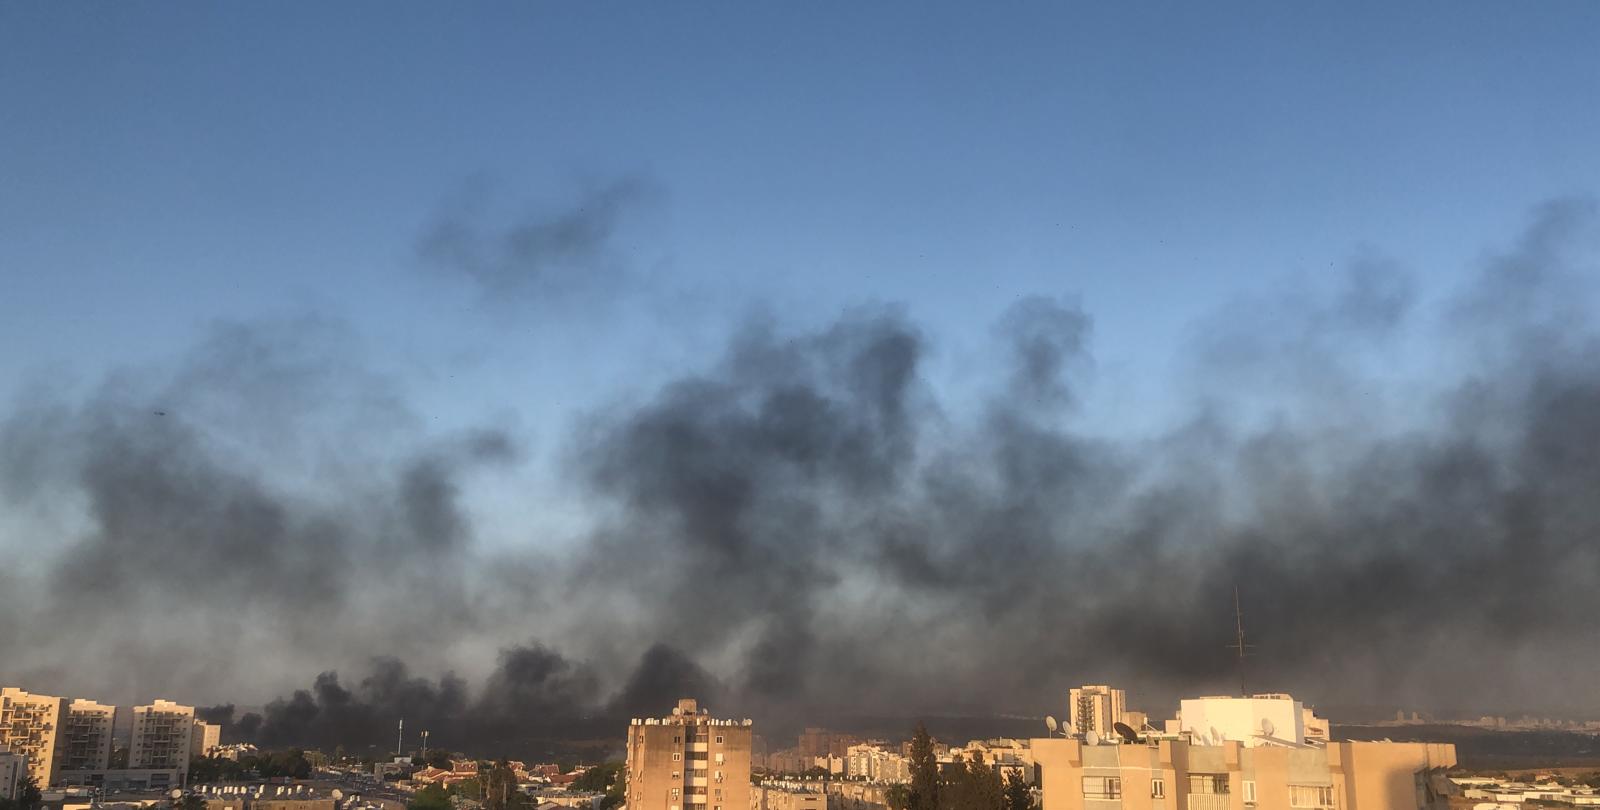 העיר לוד עולה בלהבות (צילום: דניאלה אברמוב)